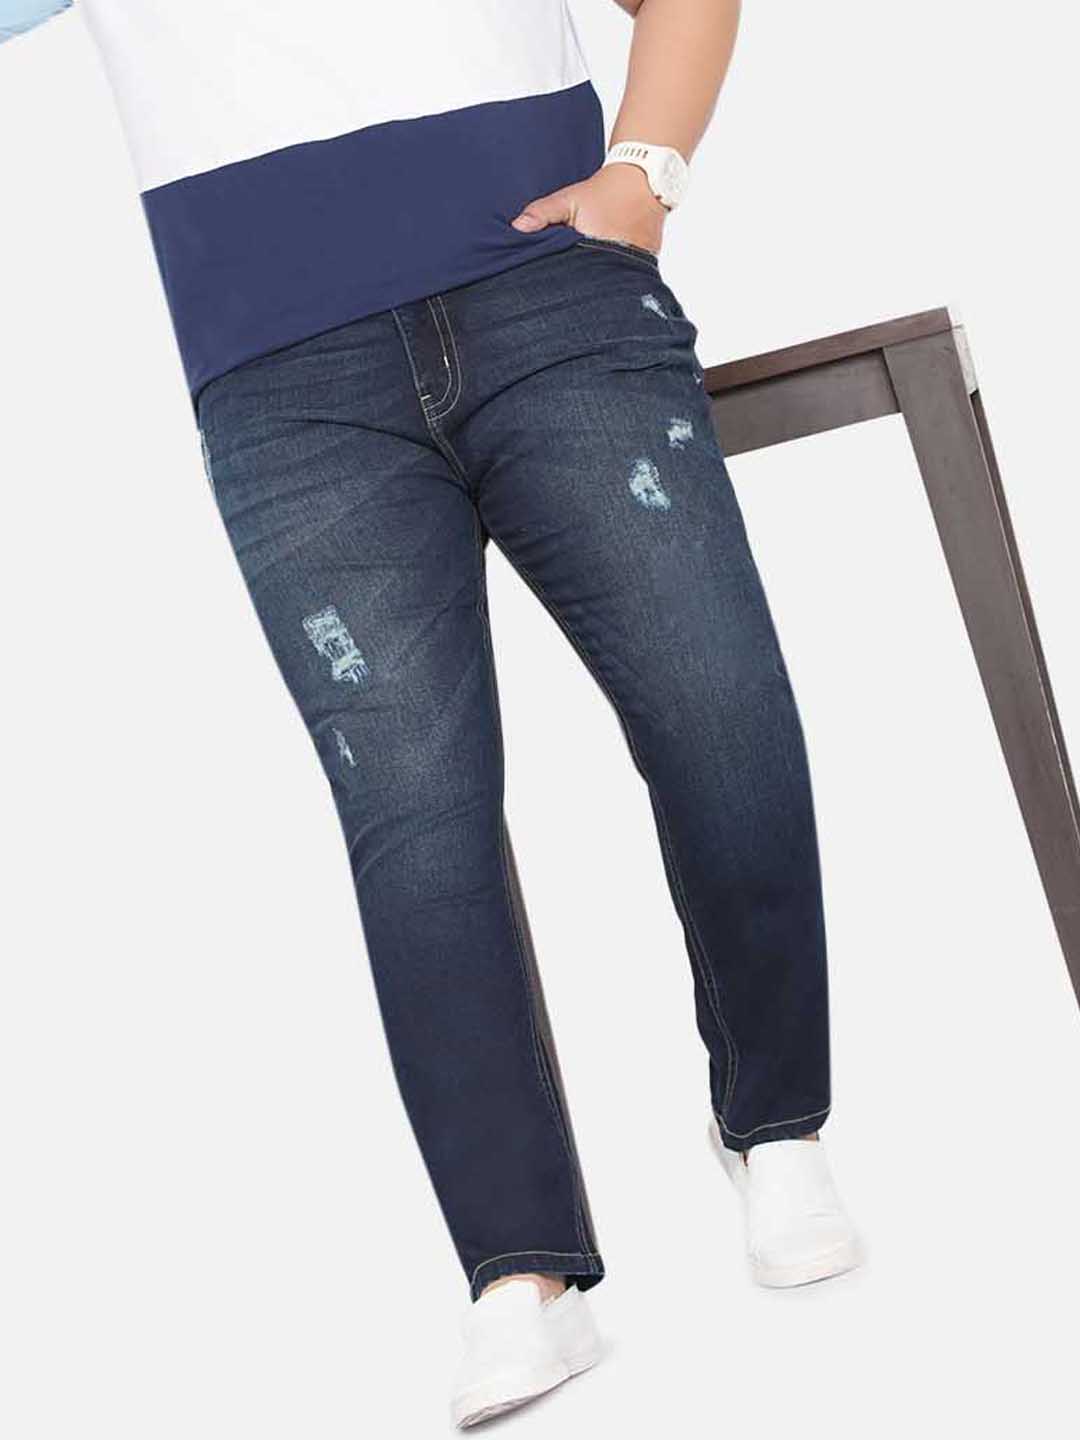 bottomwear/jeans/JPJ12235/jpj12235-1.jpg